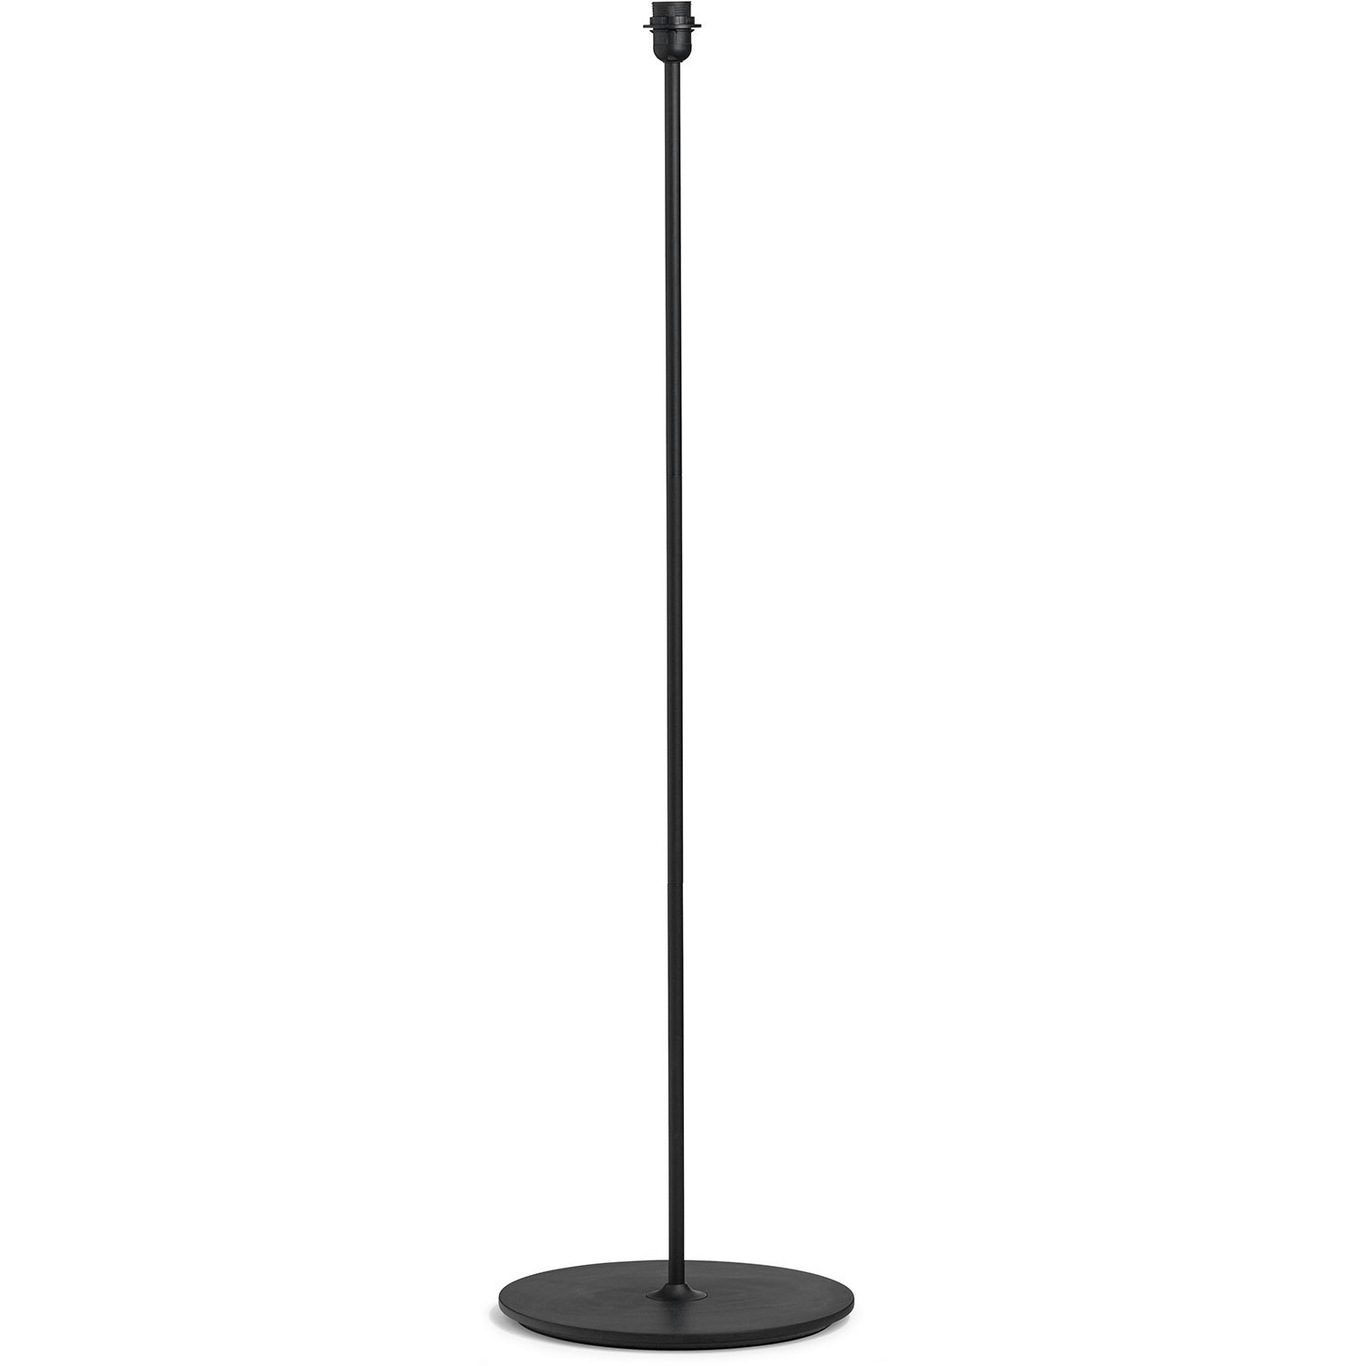 Common Floor Lamp, Black/Steel